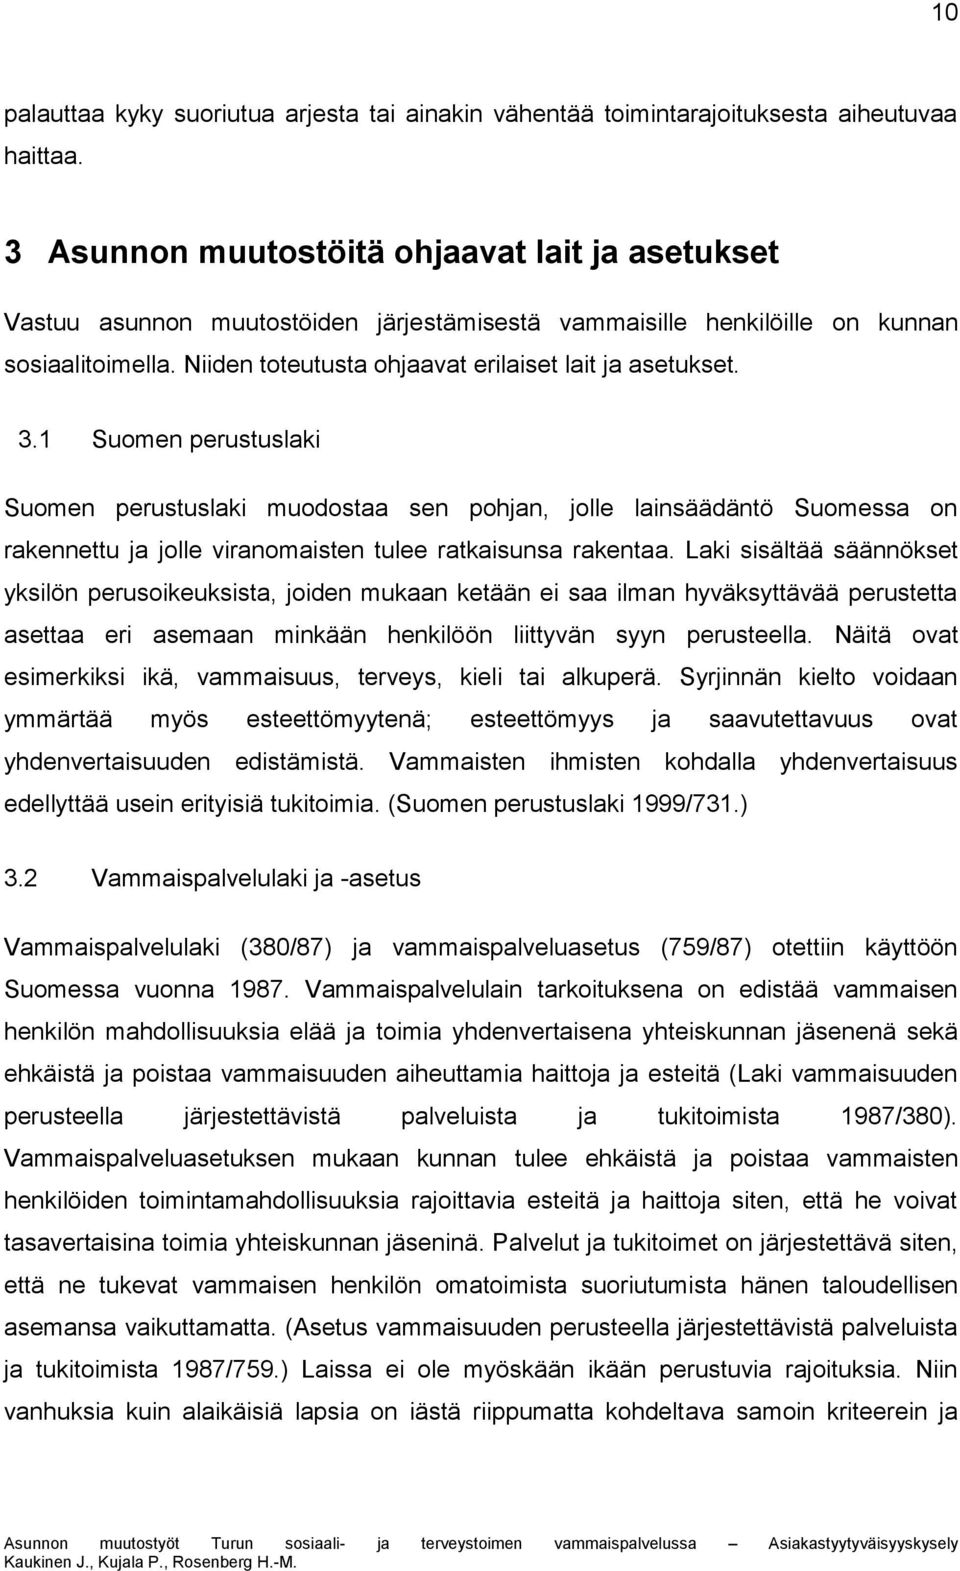 3.1 Suomen perustuslaki Suomen perustuslaki muodostaa sen pohjan, jolle lainsäädäntö Suomessa on rakennettu ja jolle viranomaisten tulee ratkaisunsa rakentaa.